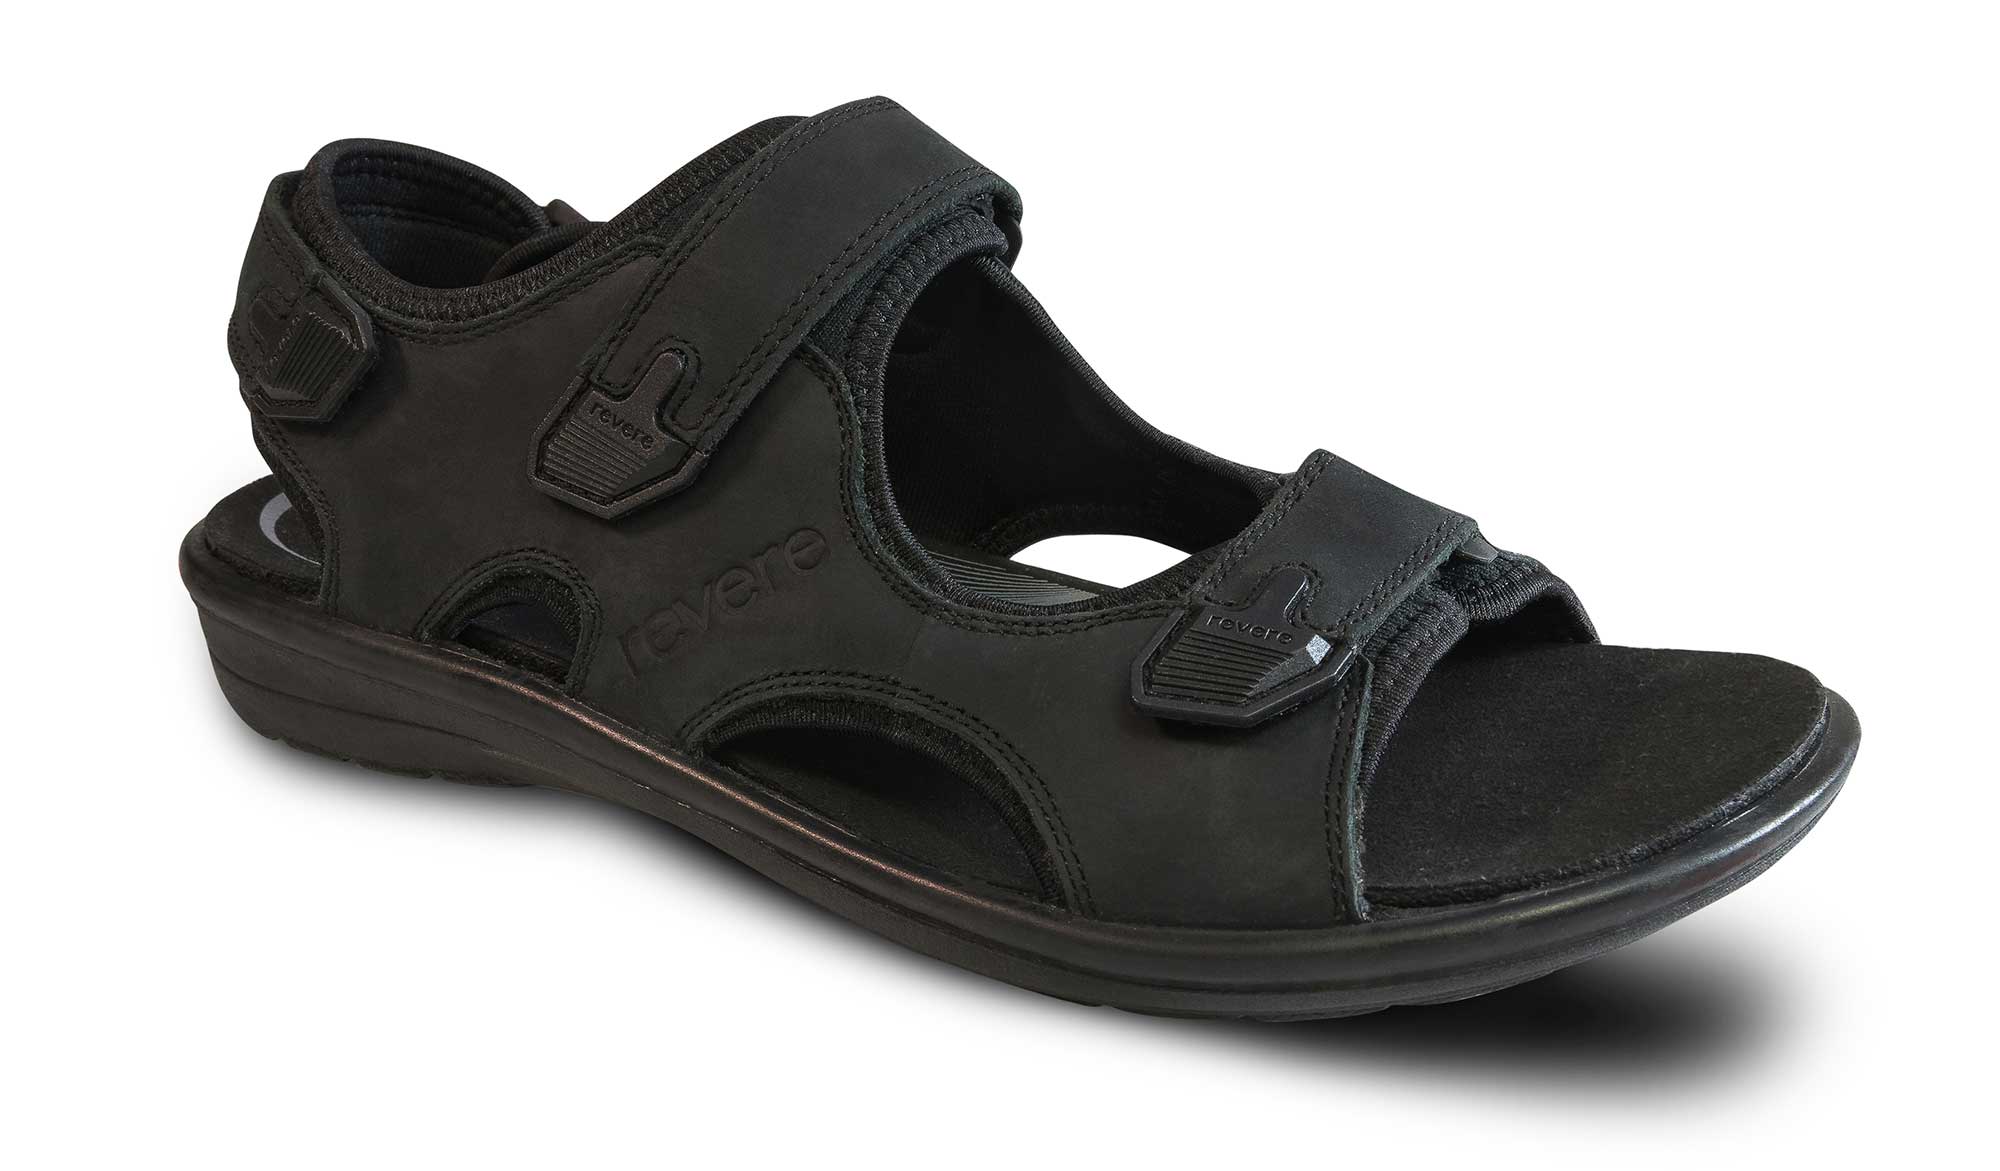 J.Shoe | Mens sandals fashion, Mens leather sandals, Mens sandals casual